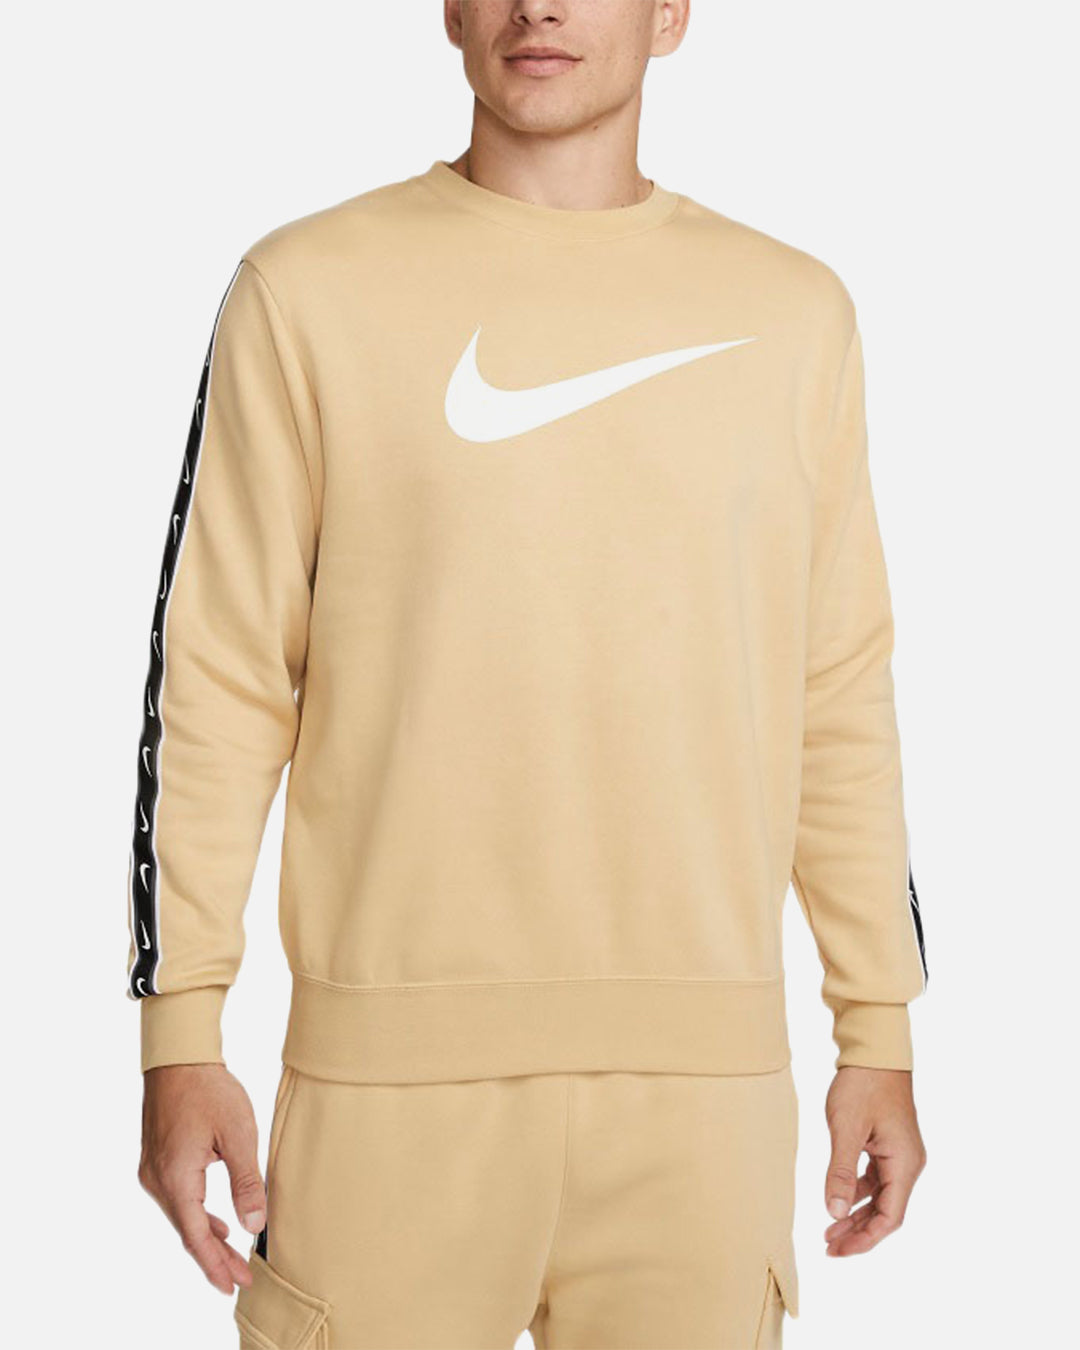 Nike Sportswear Fleece Sweatshirt - Beige/White/Black